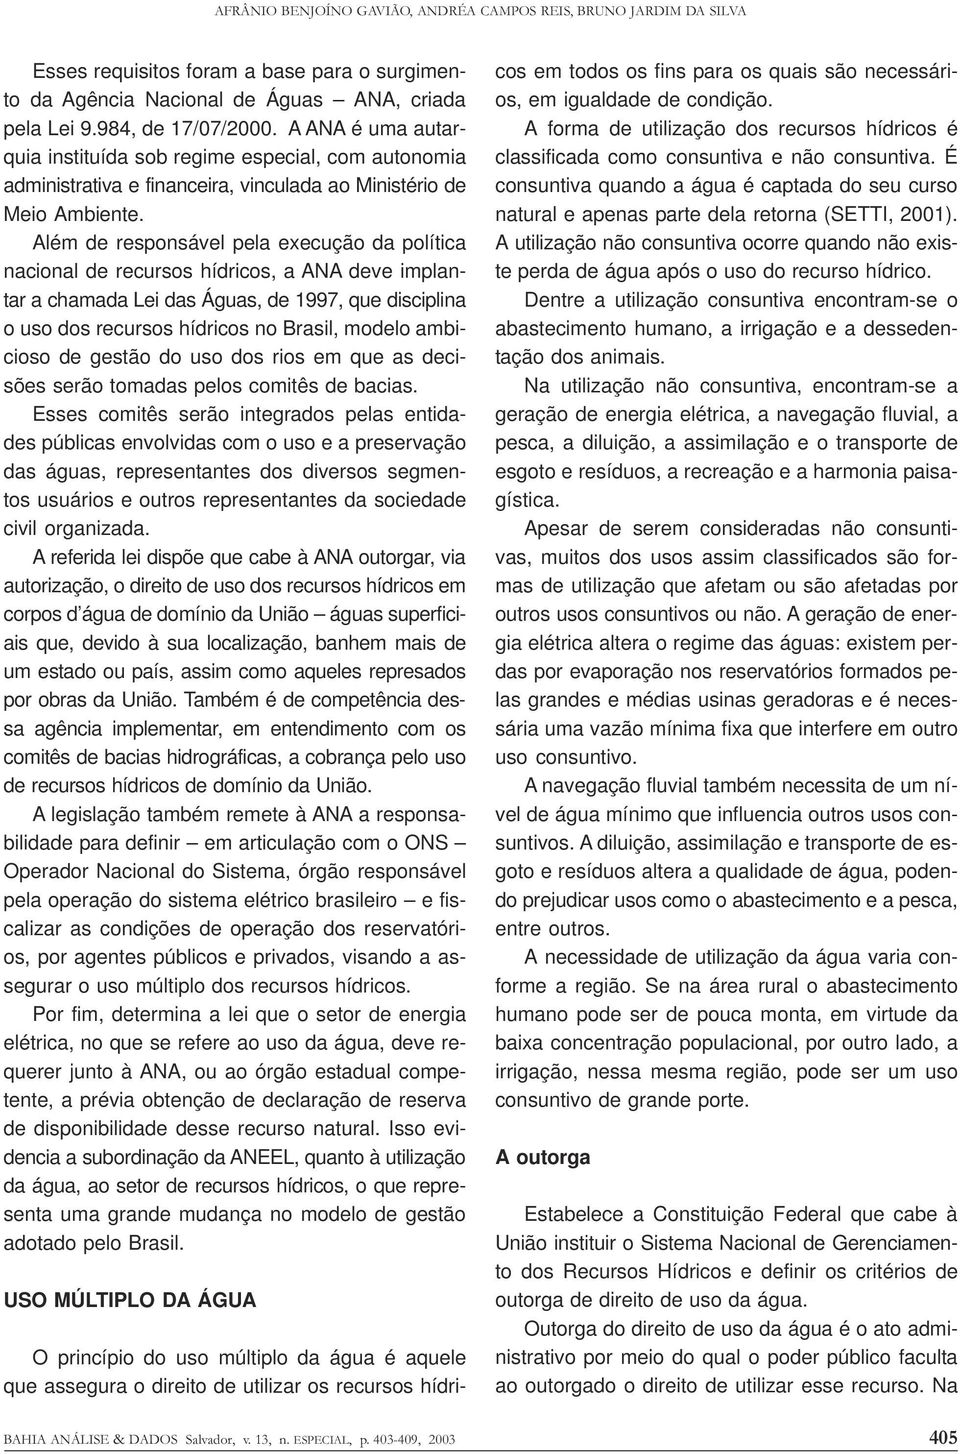 Além de responsável pela execução da política nacional de recursos hídricos, a ANA deve implantar a chamada Lei das Águas, de 1997, que disciplina o uso dos recursos hídricos no Brasil, modelo